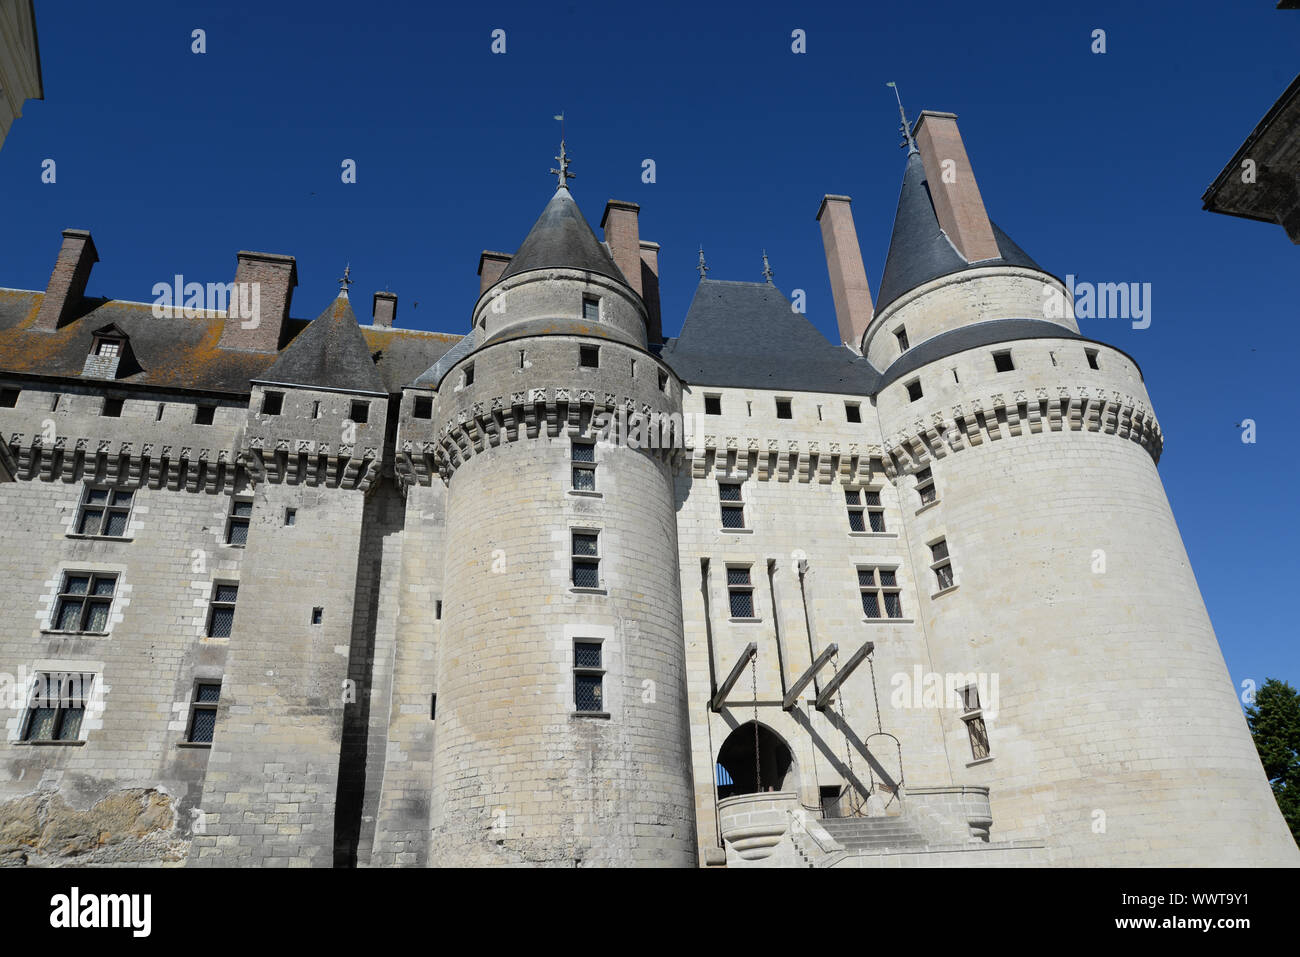 Castle in Langeais, France Stock Photo